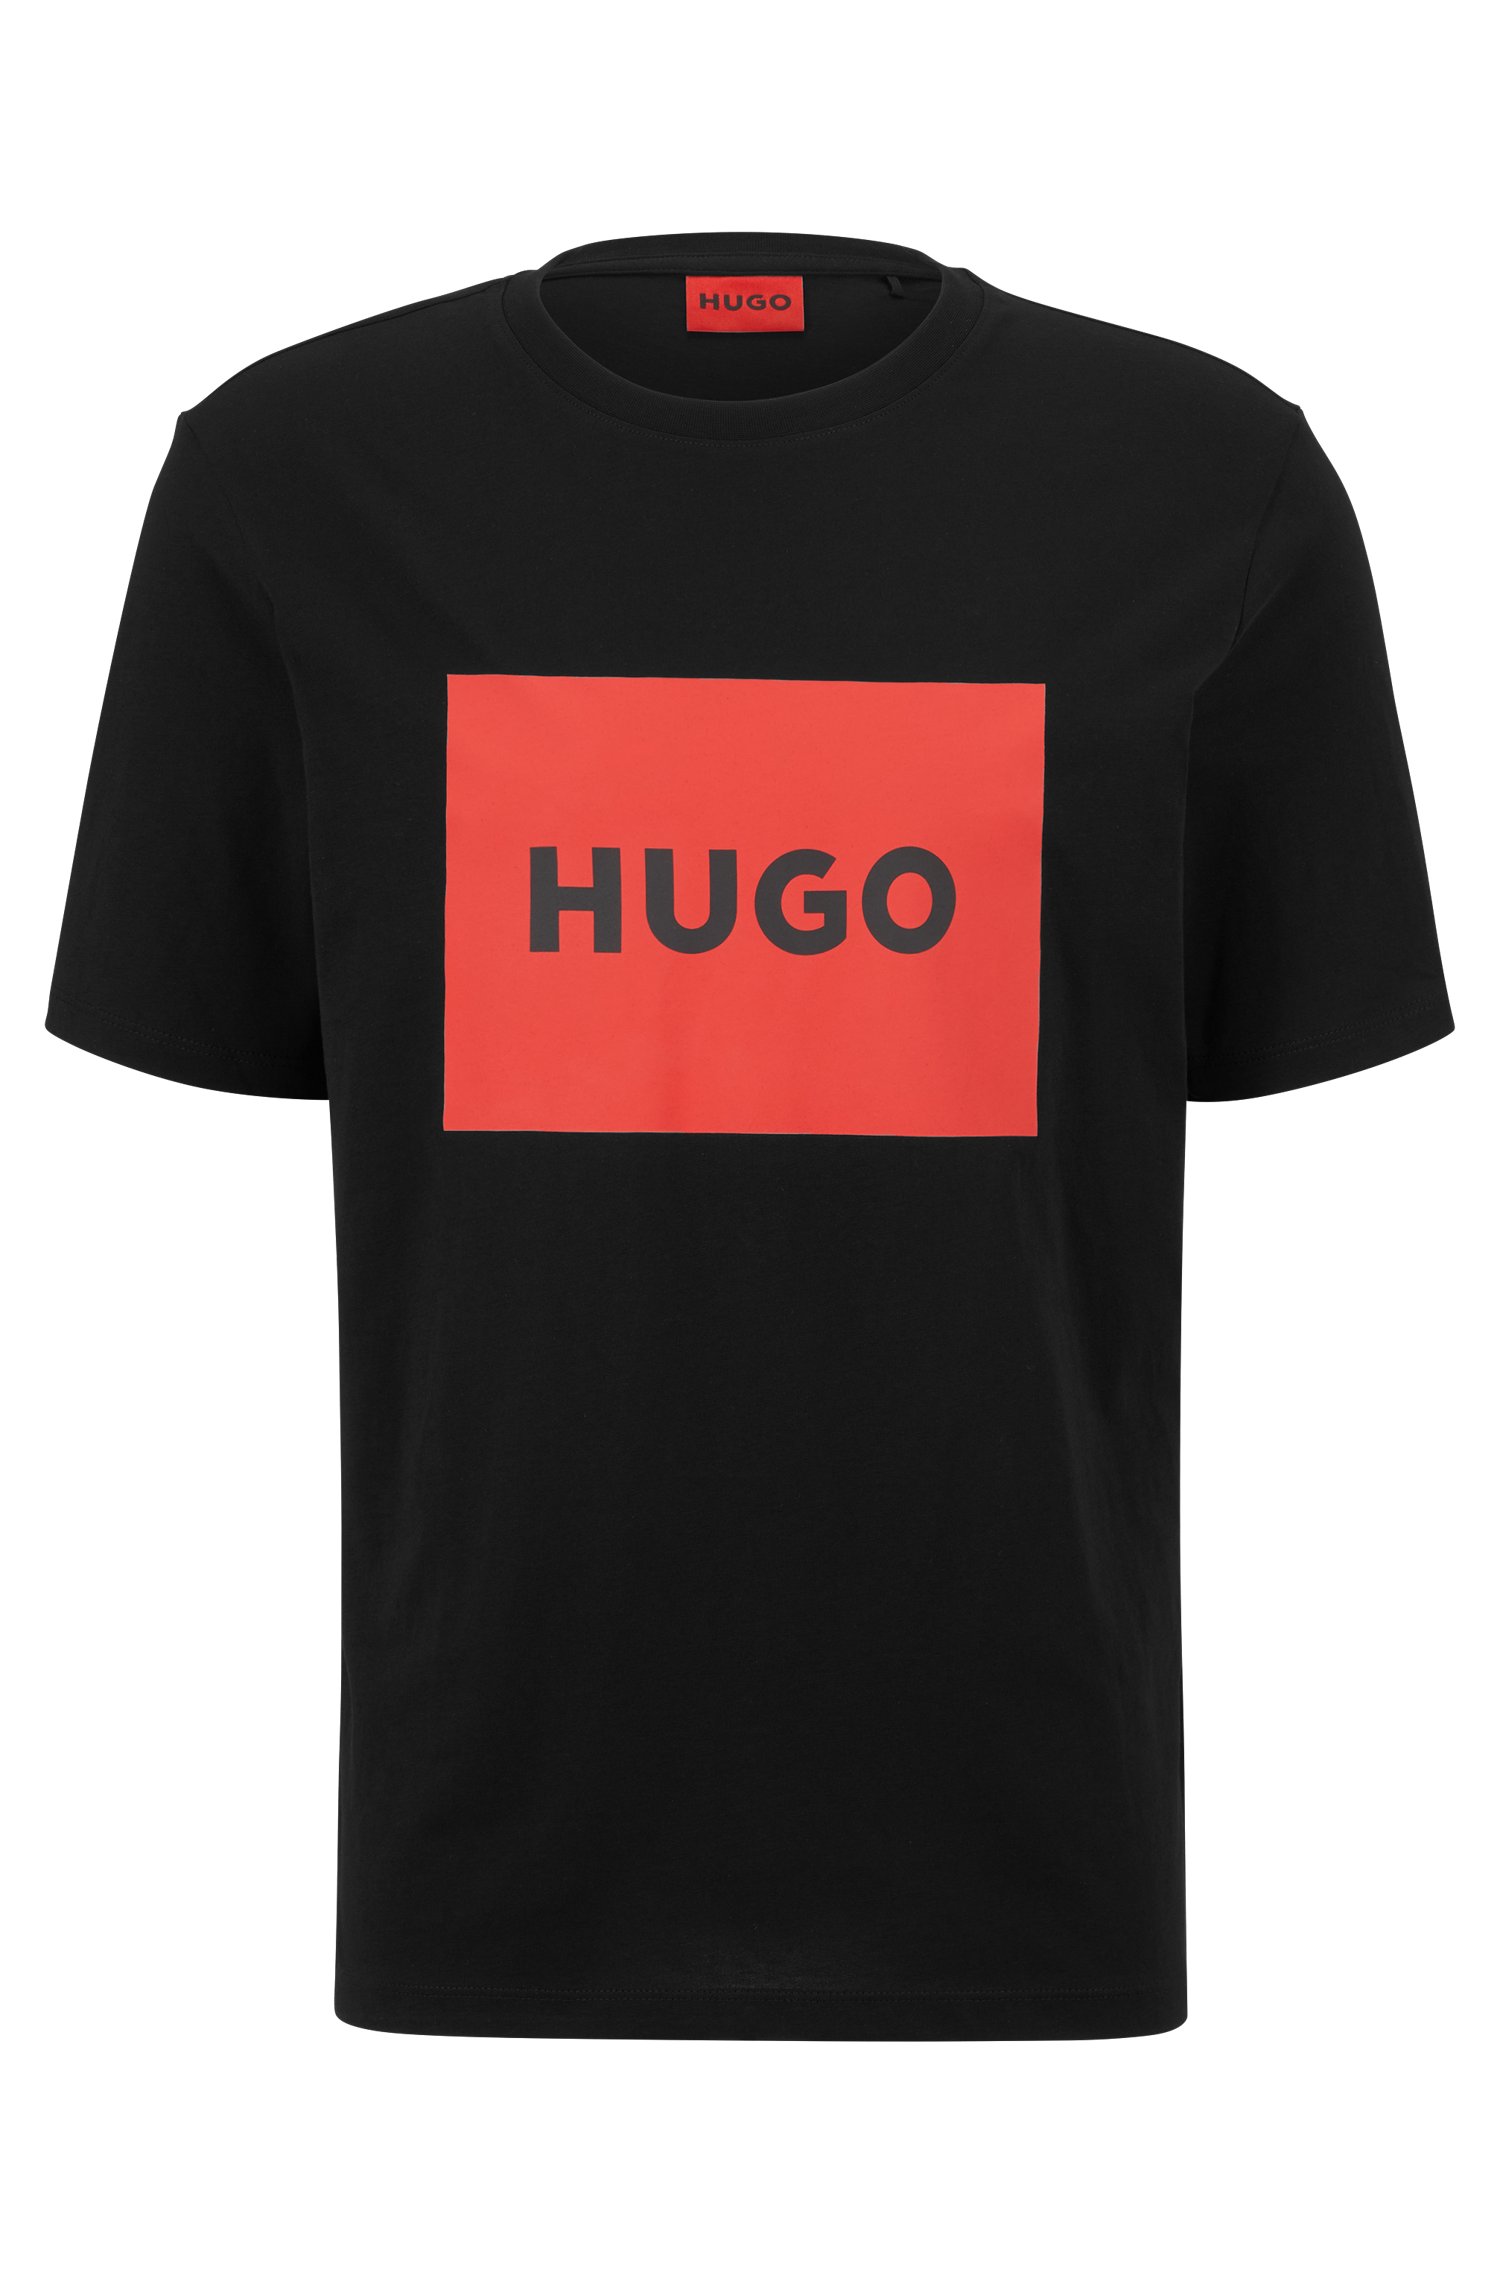 Купить футболку hugo. Футболка Hugo Boss Black. Футболка Hugo Boss мужская черная. Рубашка Hugo Boss с красным лого. Футболка Hugo красный логотип.